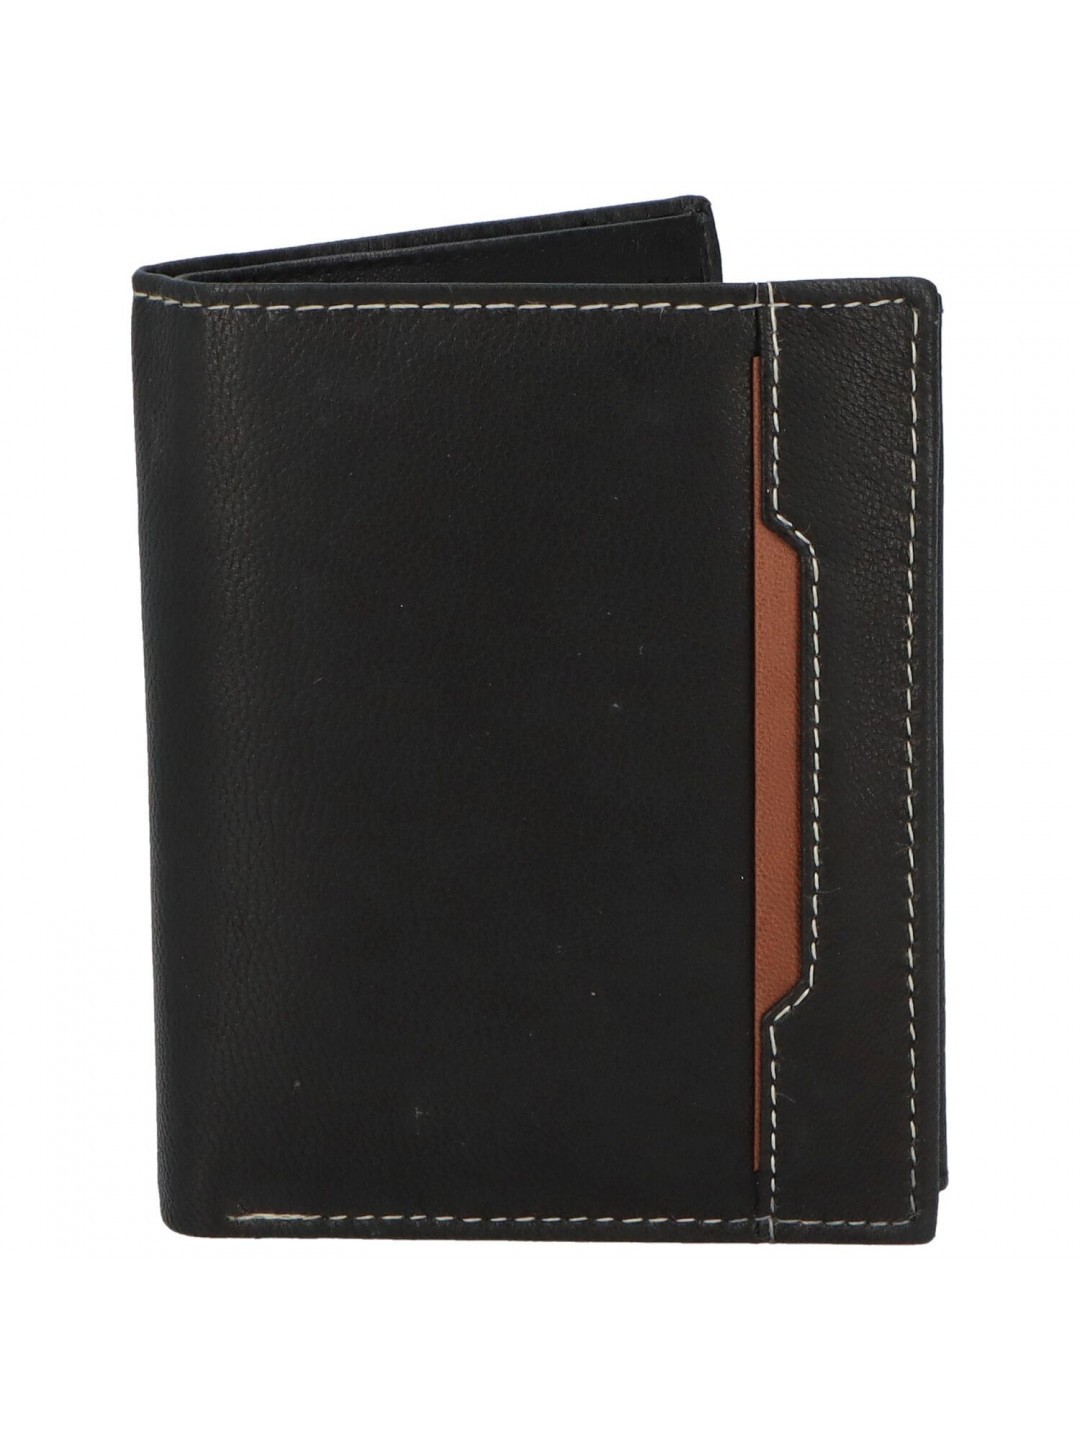 Trendová pánská kožená peněženka Mluko černá – hnědá